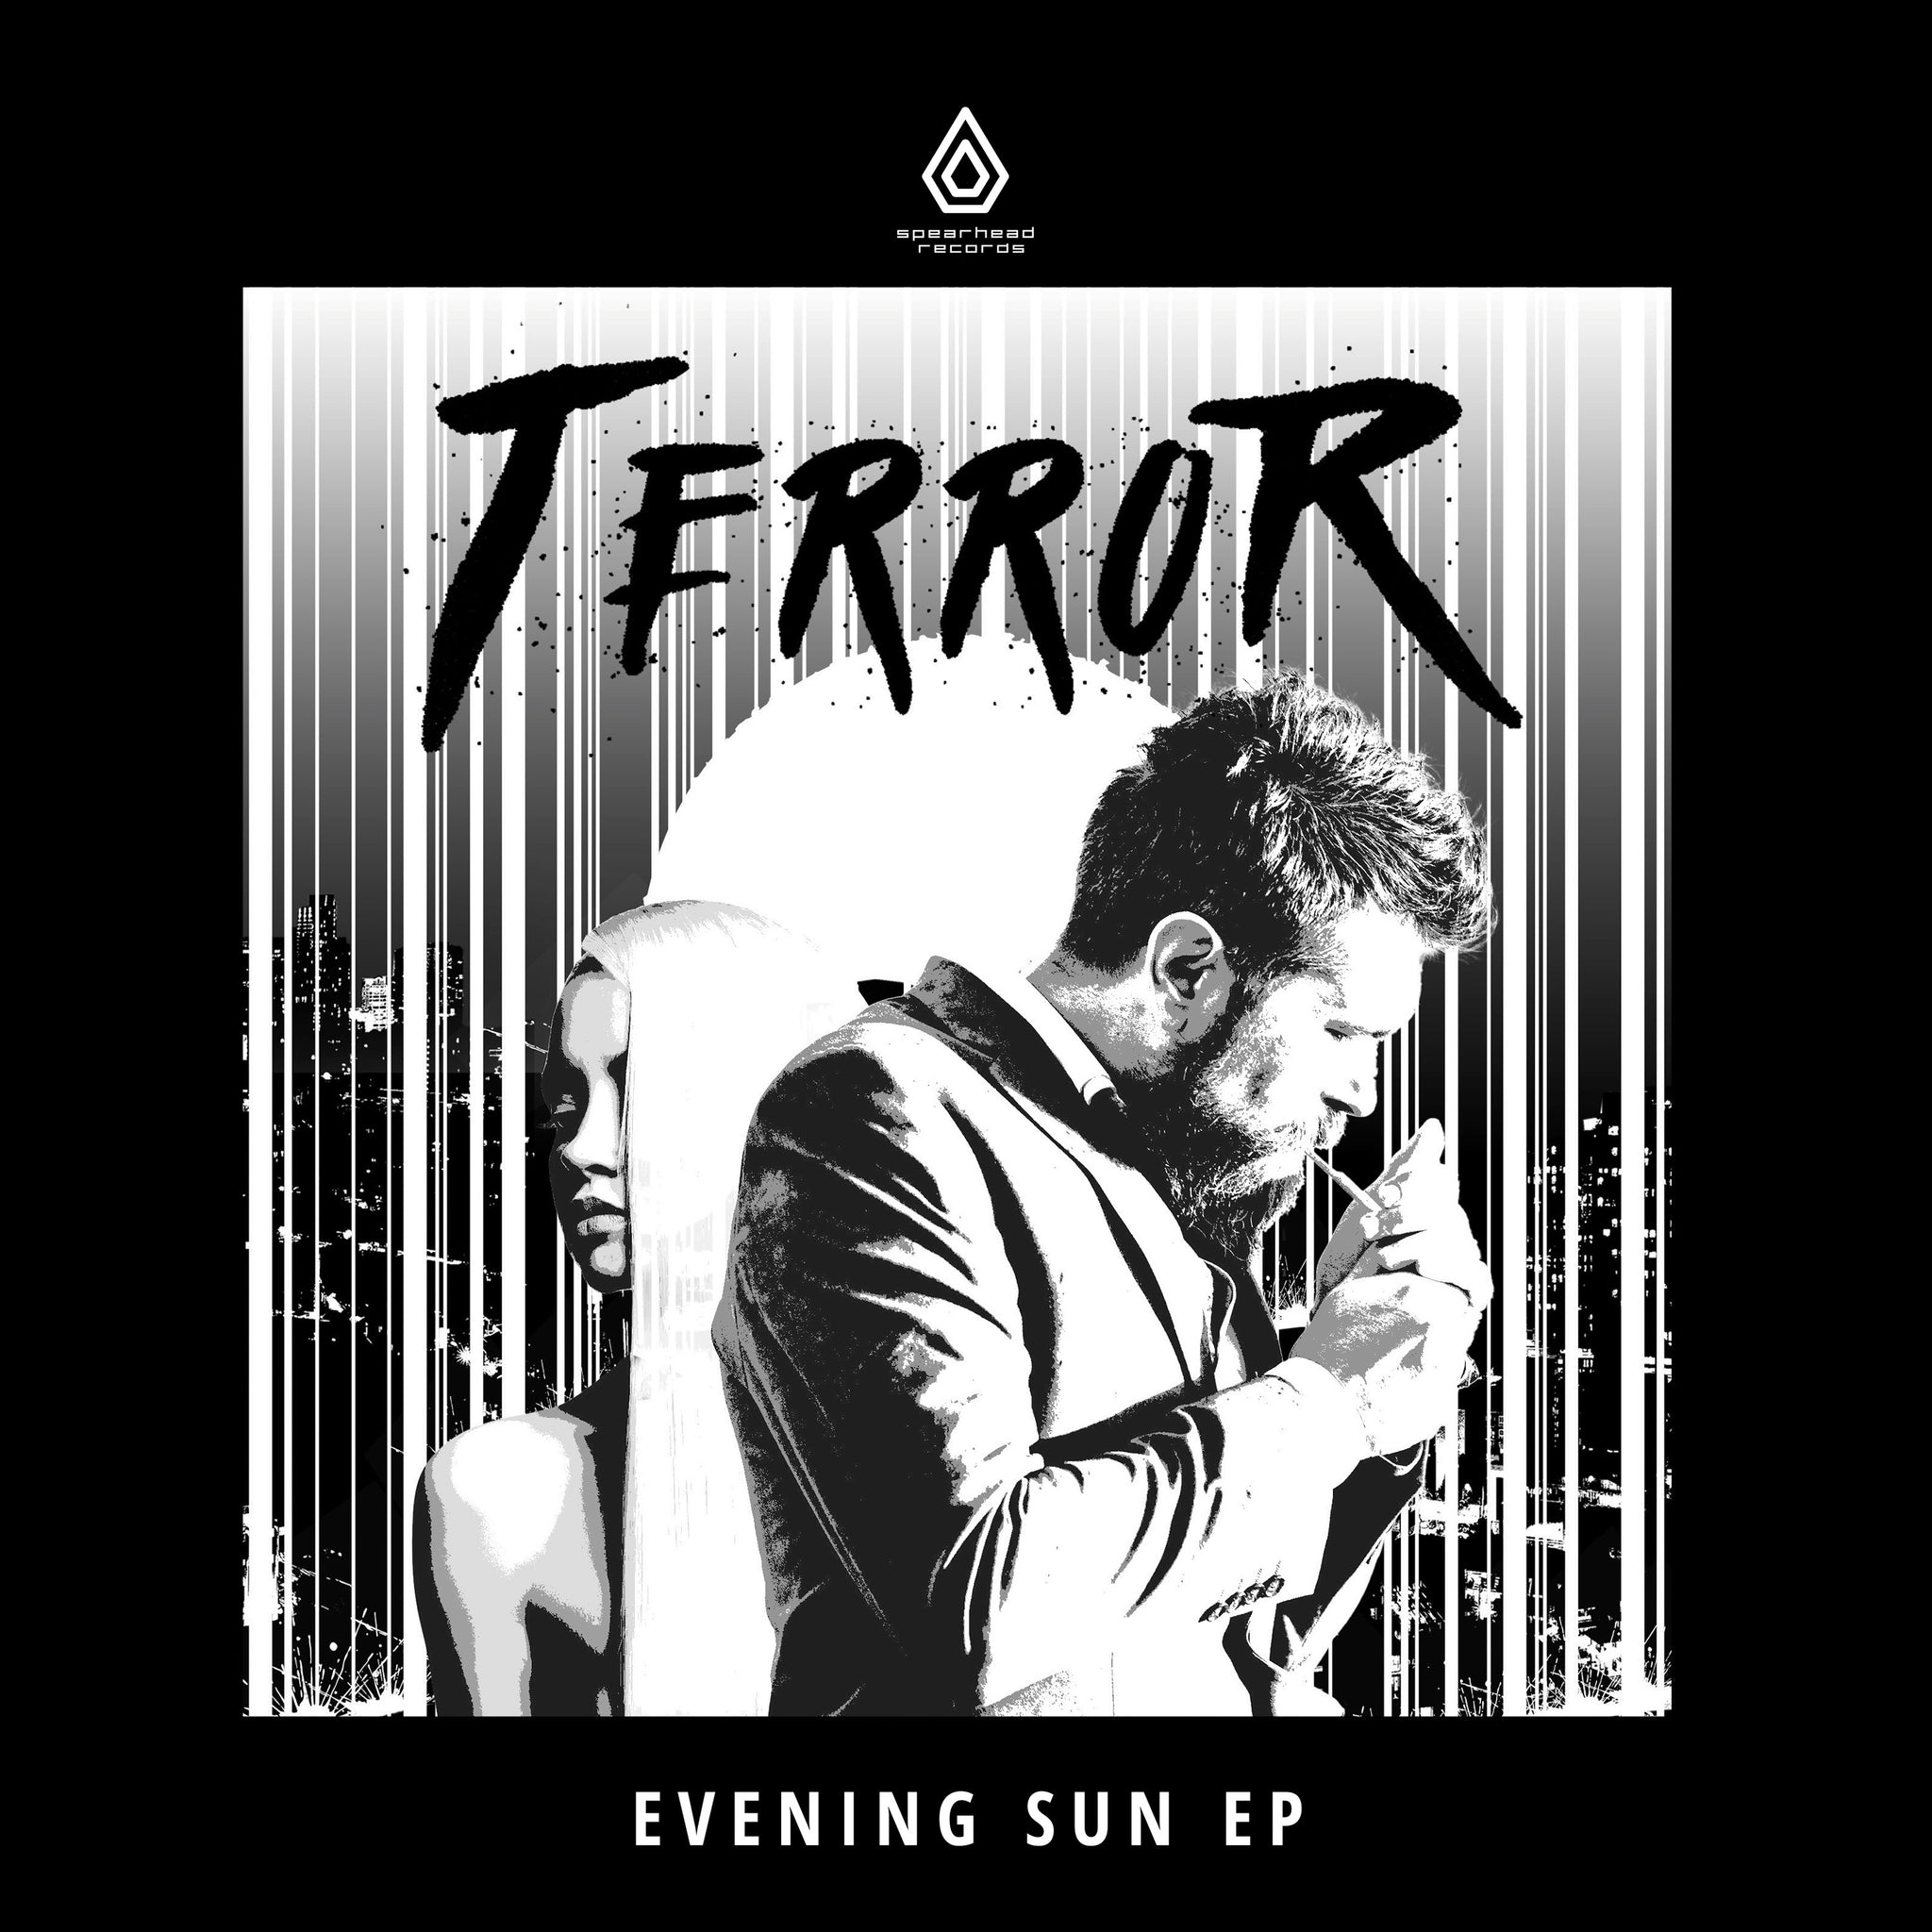 TERROR 'EVENING SUN EP' 12"